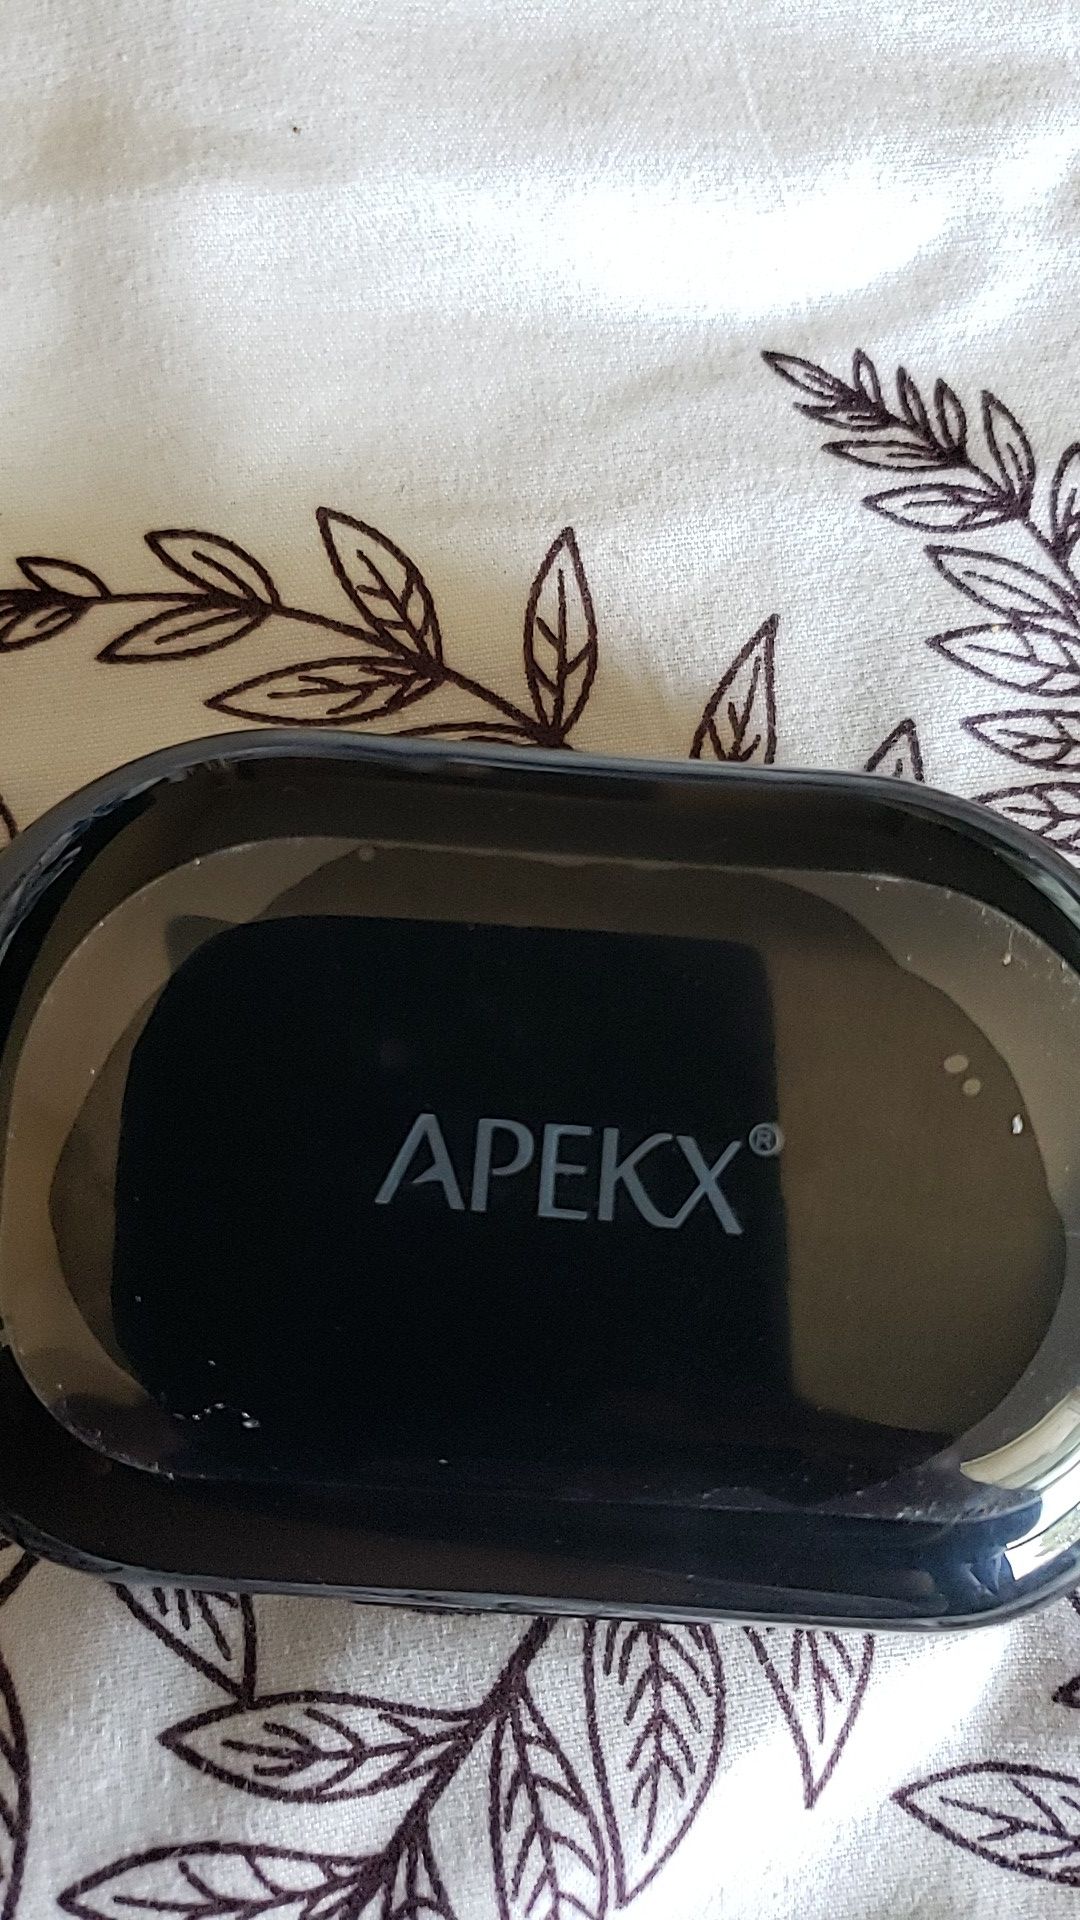 BRAND NEW NEVER USED APEKX Bluetooth Headphones